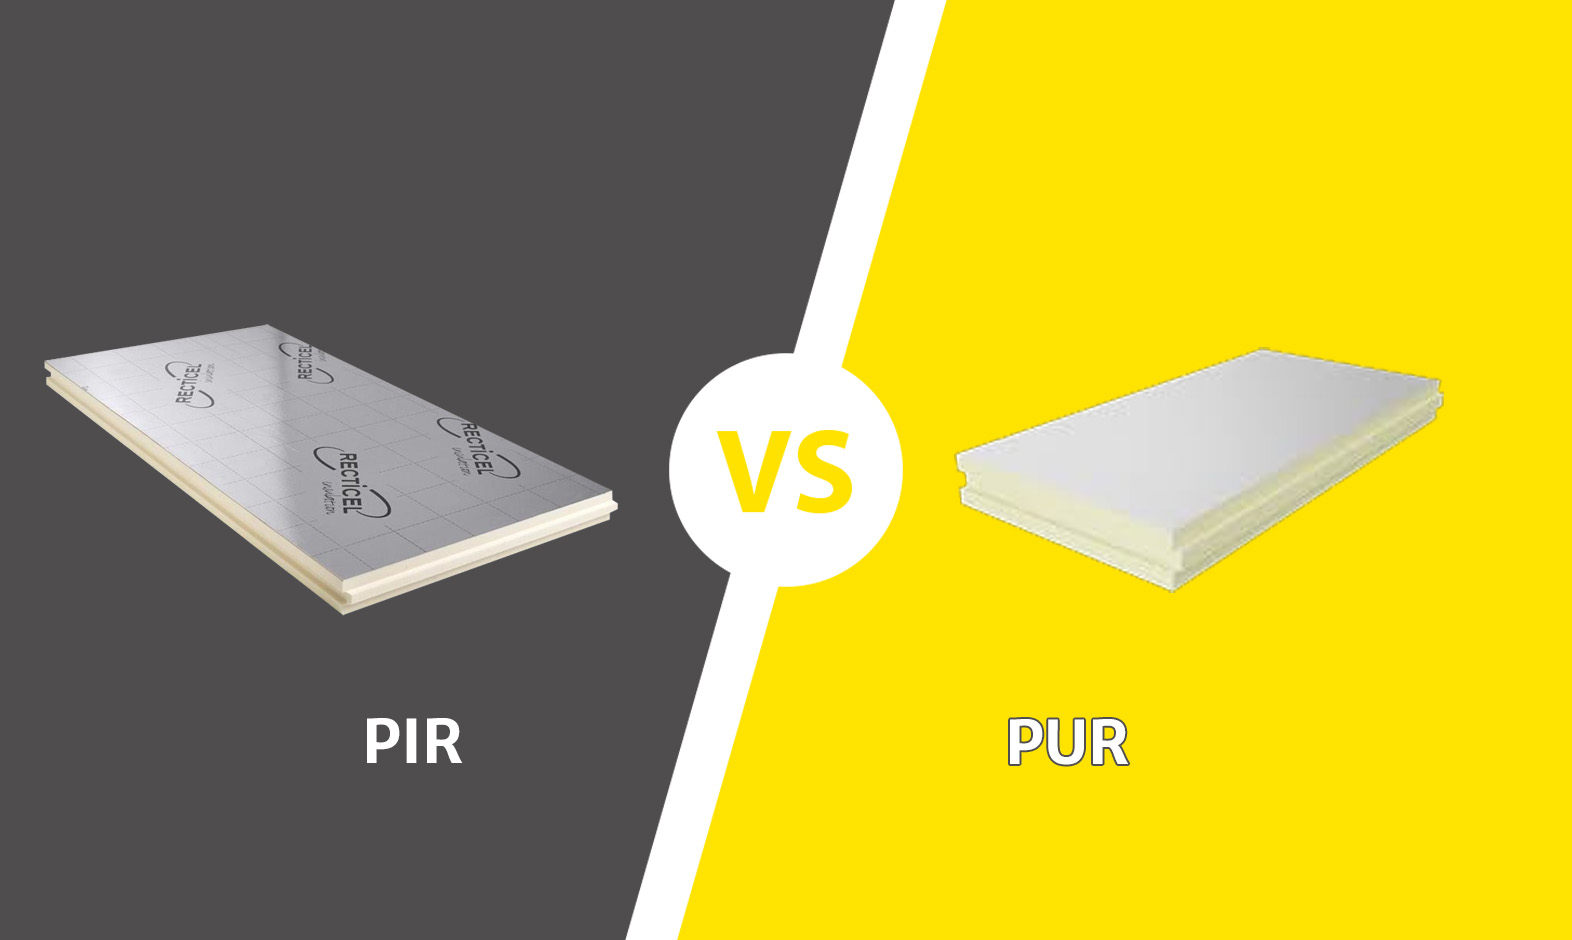  Wat is het verschil tussen PIR en PUR? 